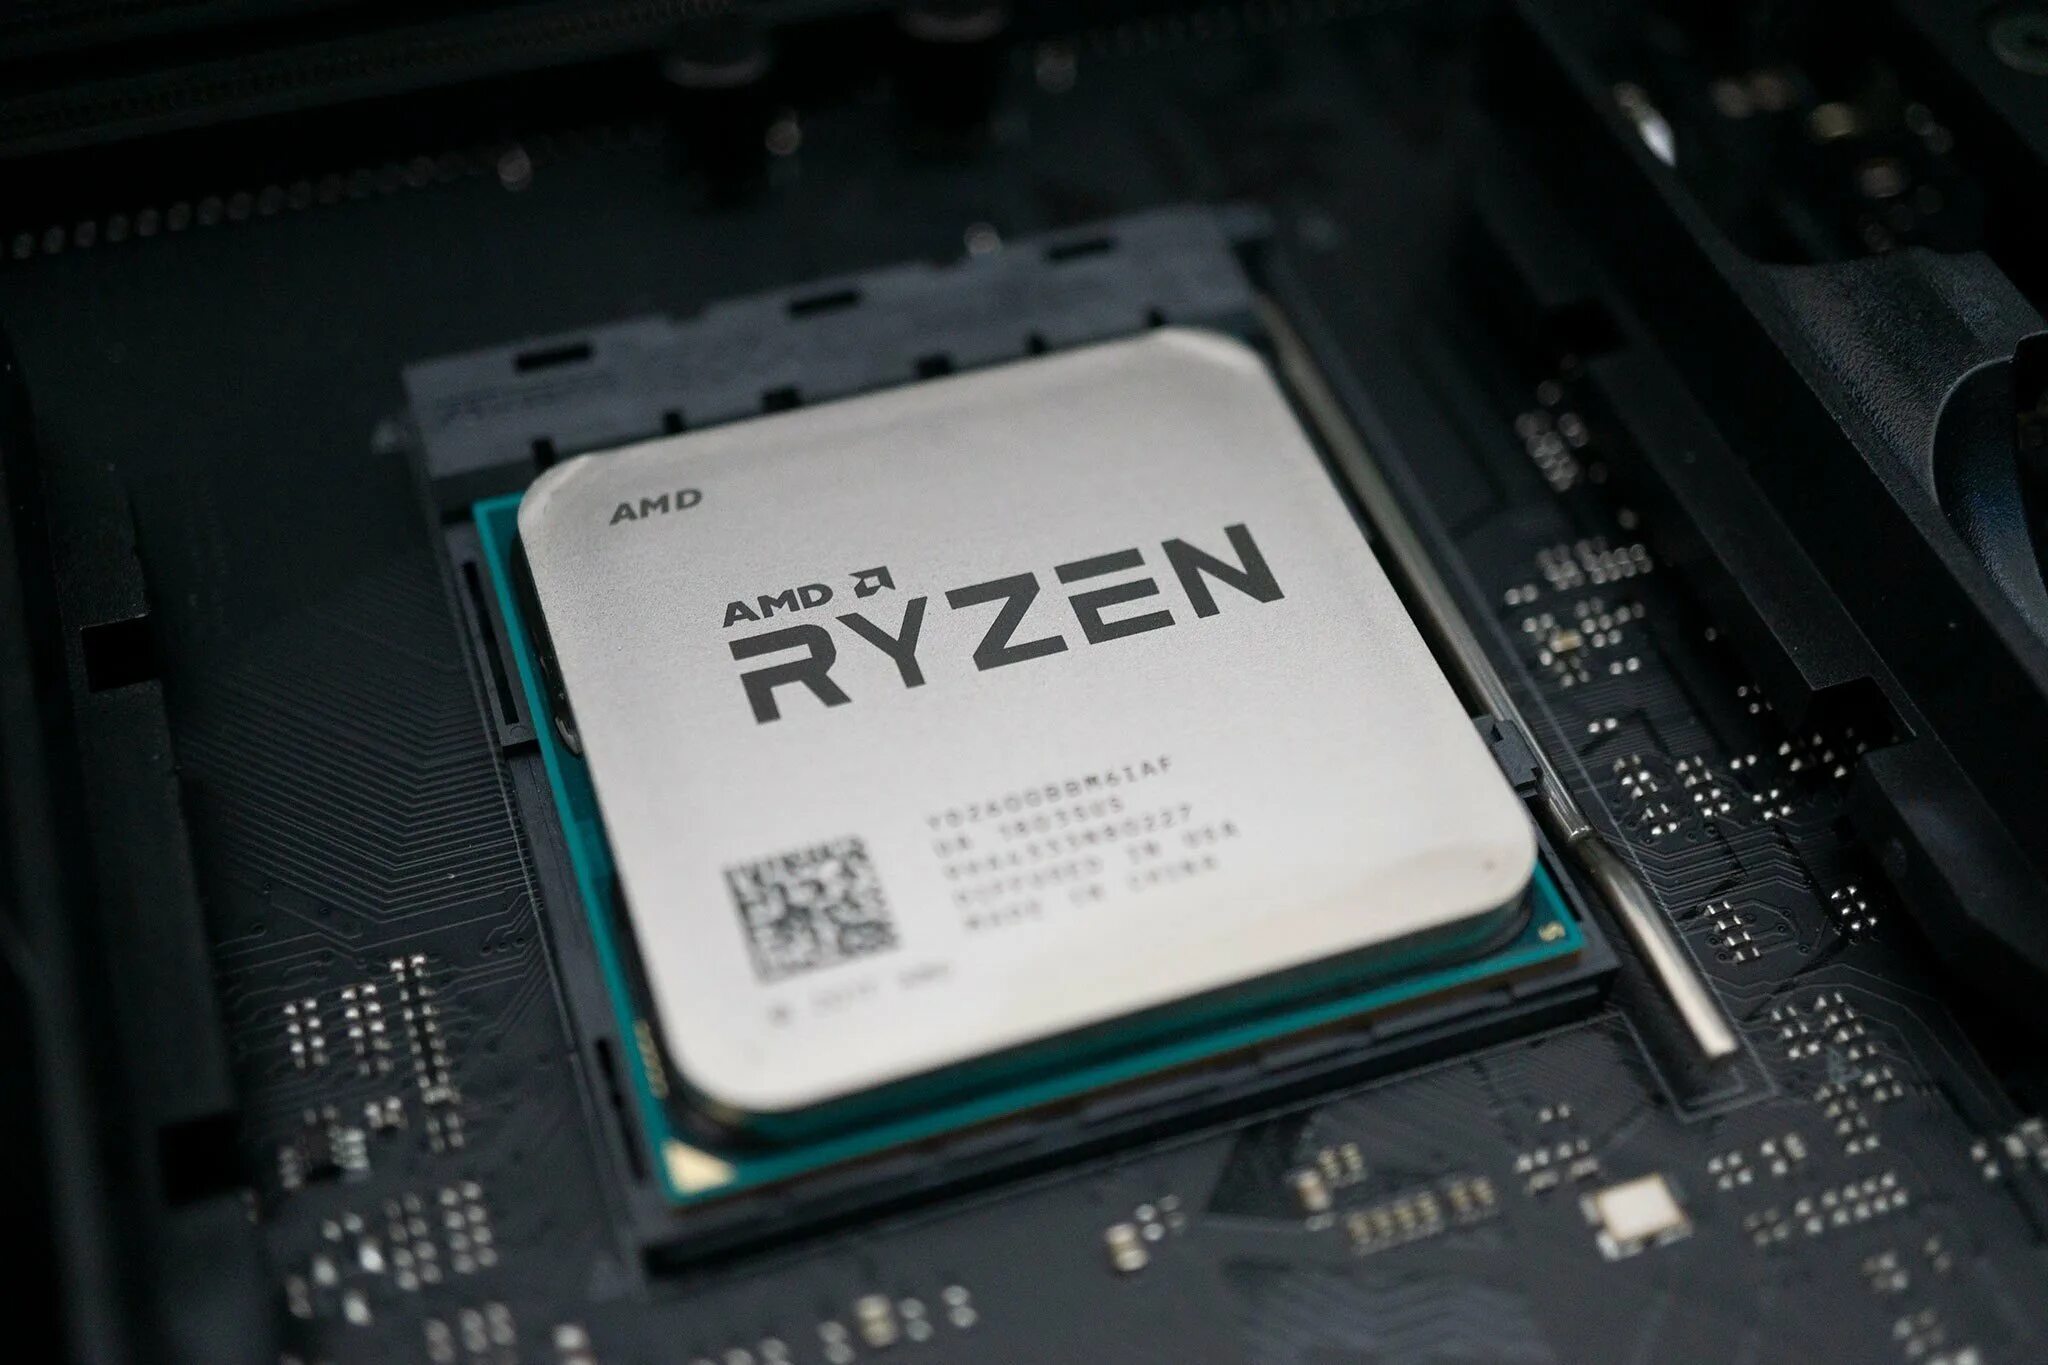 Ryzen 5 2600 купить. Ryzen 5 2600. Процессор АМД 5 2600. Ryazan 5 2600. Процессор AMD Ryzen 5.